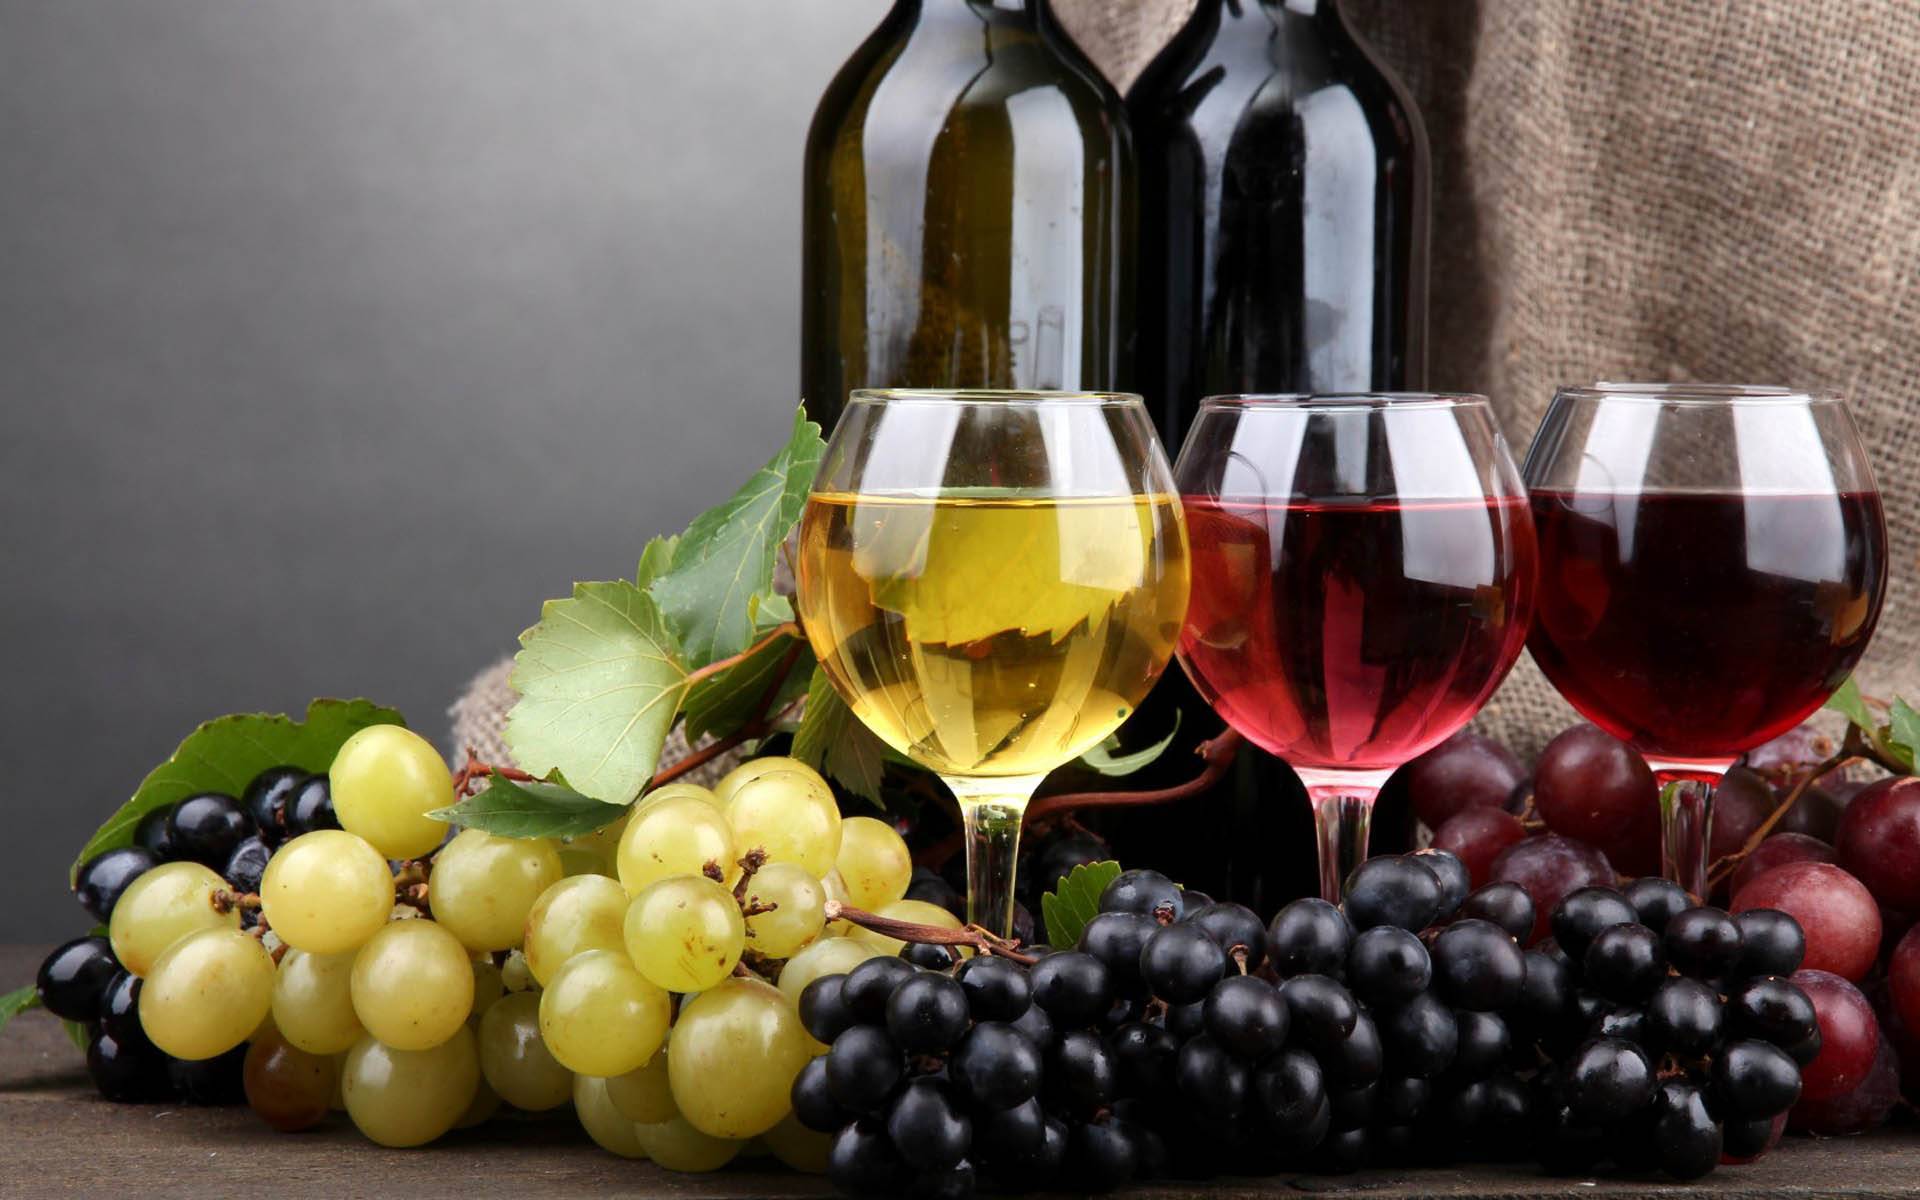 Любой желающий может без труда освоить искусство создания почитаемого им напитка. Для этого следует лишь внимательно изучить рекомендации по проведению последовательных действий в создании продукта виноделия.